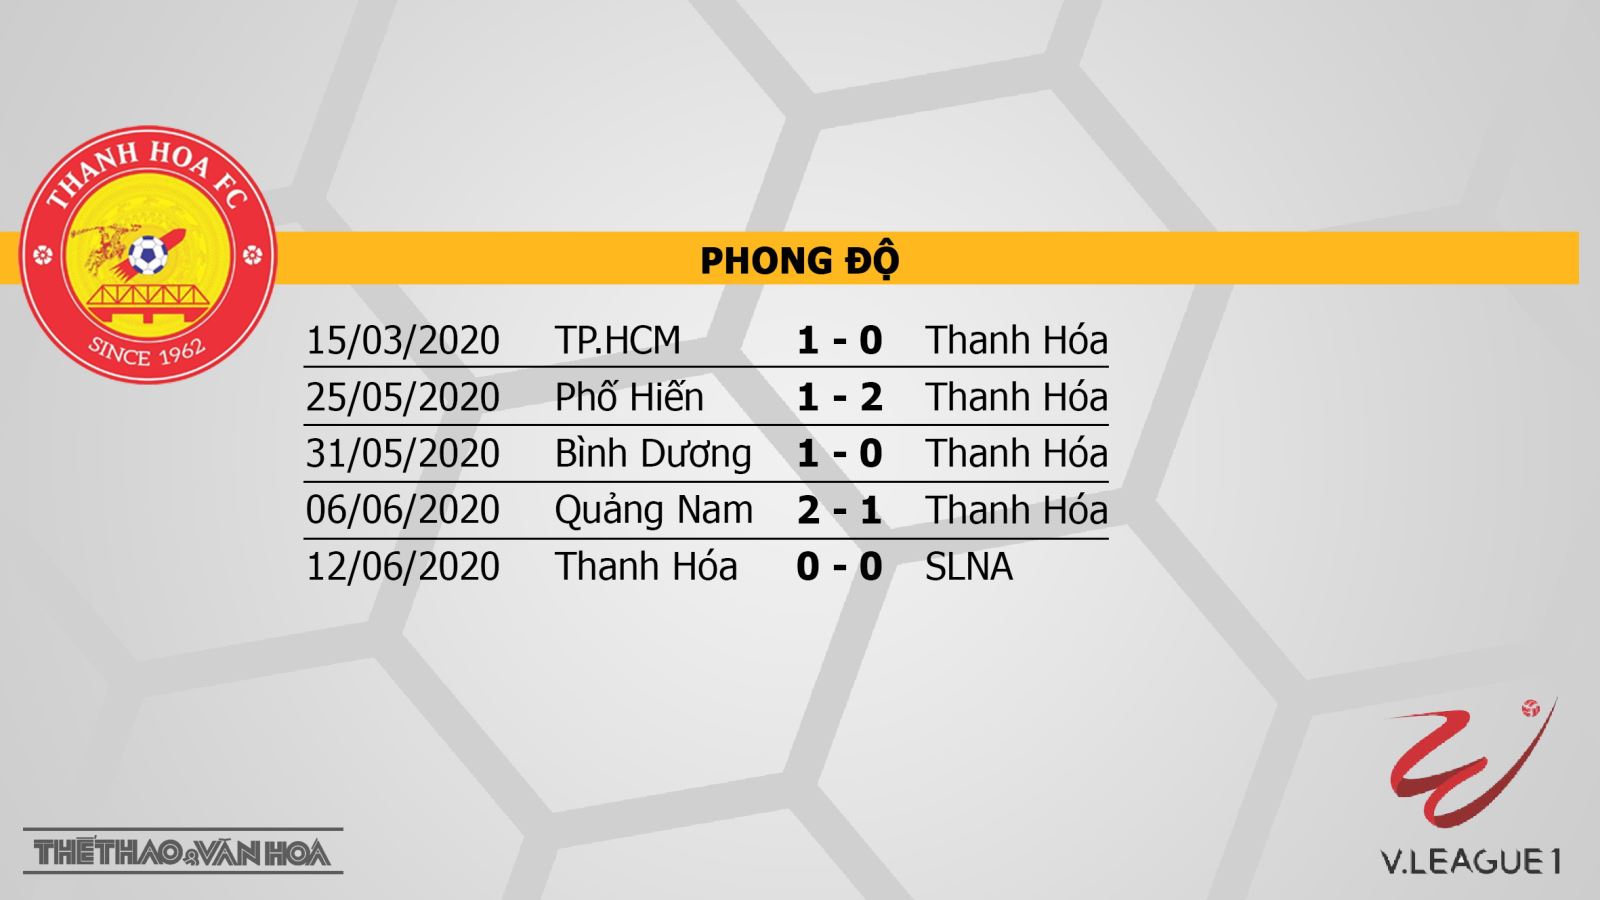 Thanh Hóa vs Nam Định, Thanh Hoá, Nam Định, nhận định bóng đá bóng đá, kèo bóng đá, bóng đá, trực tiếp bóng đá, trực tiếp Thanh Hóa vs Nam Định